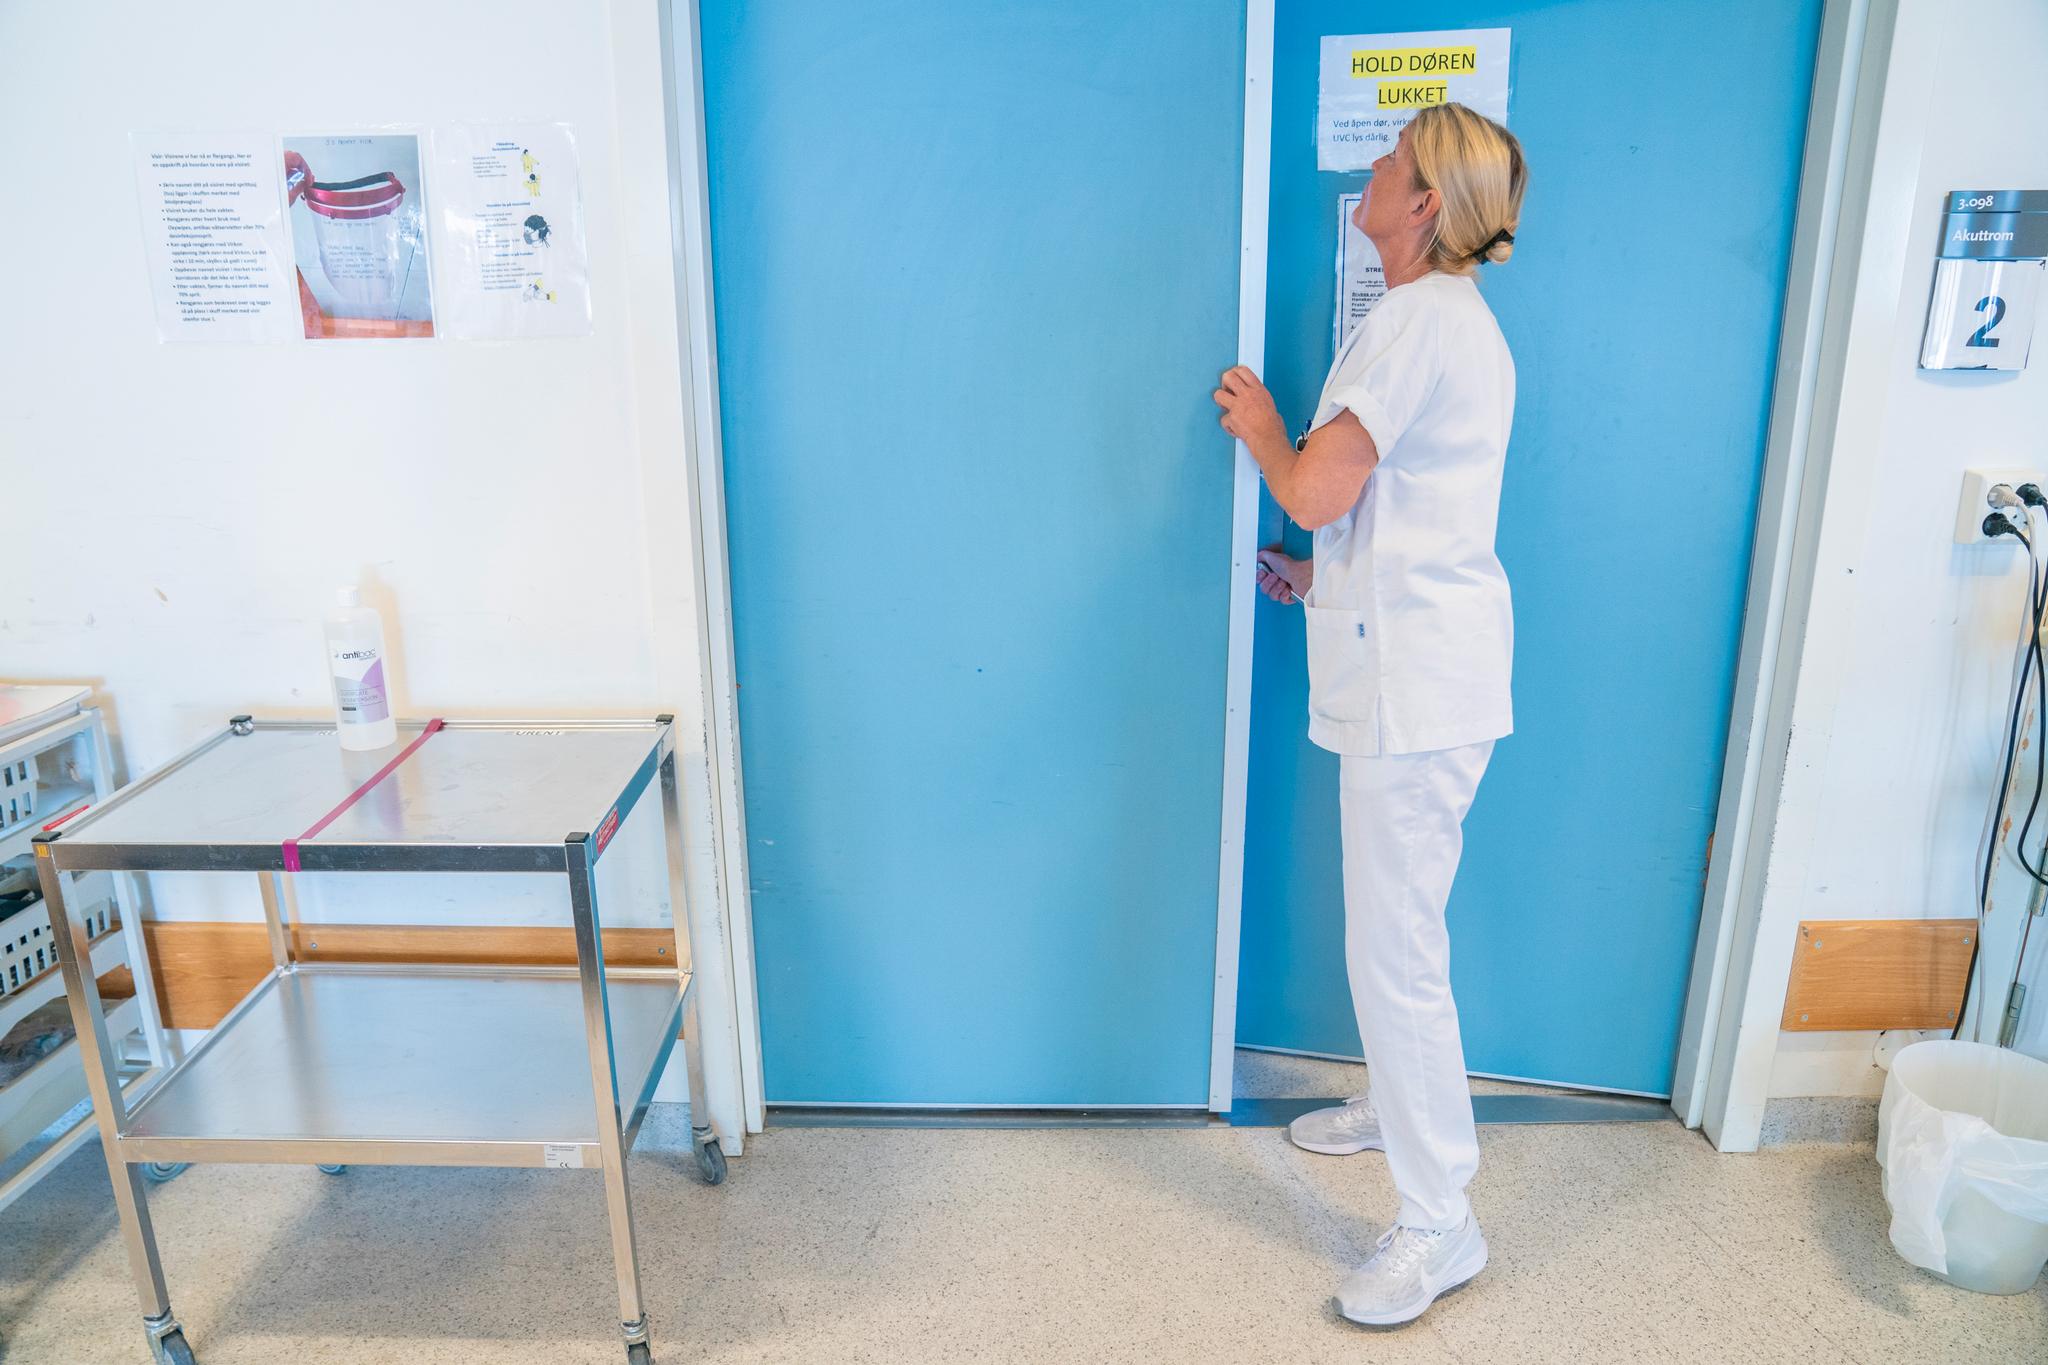 207 sykepleiere ved flere sykehus i Norge er i streik.